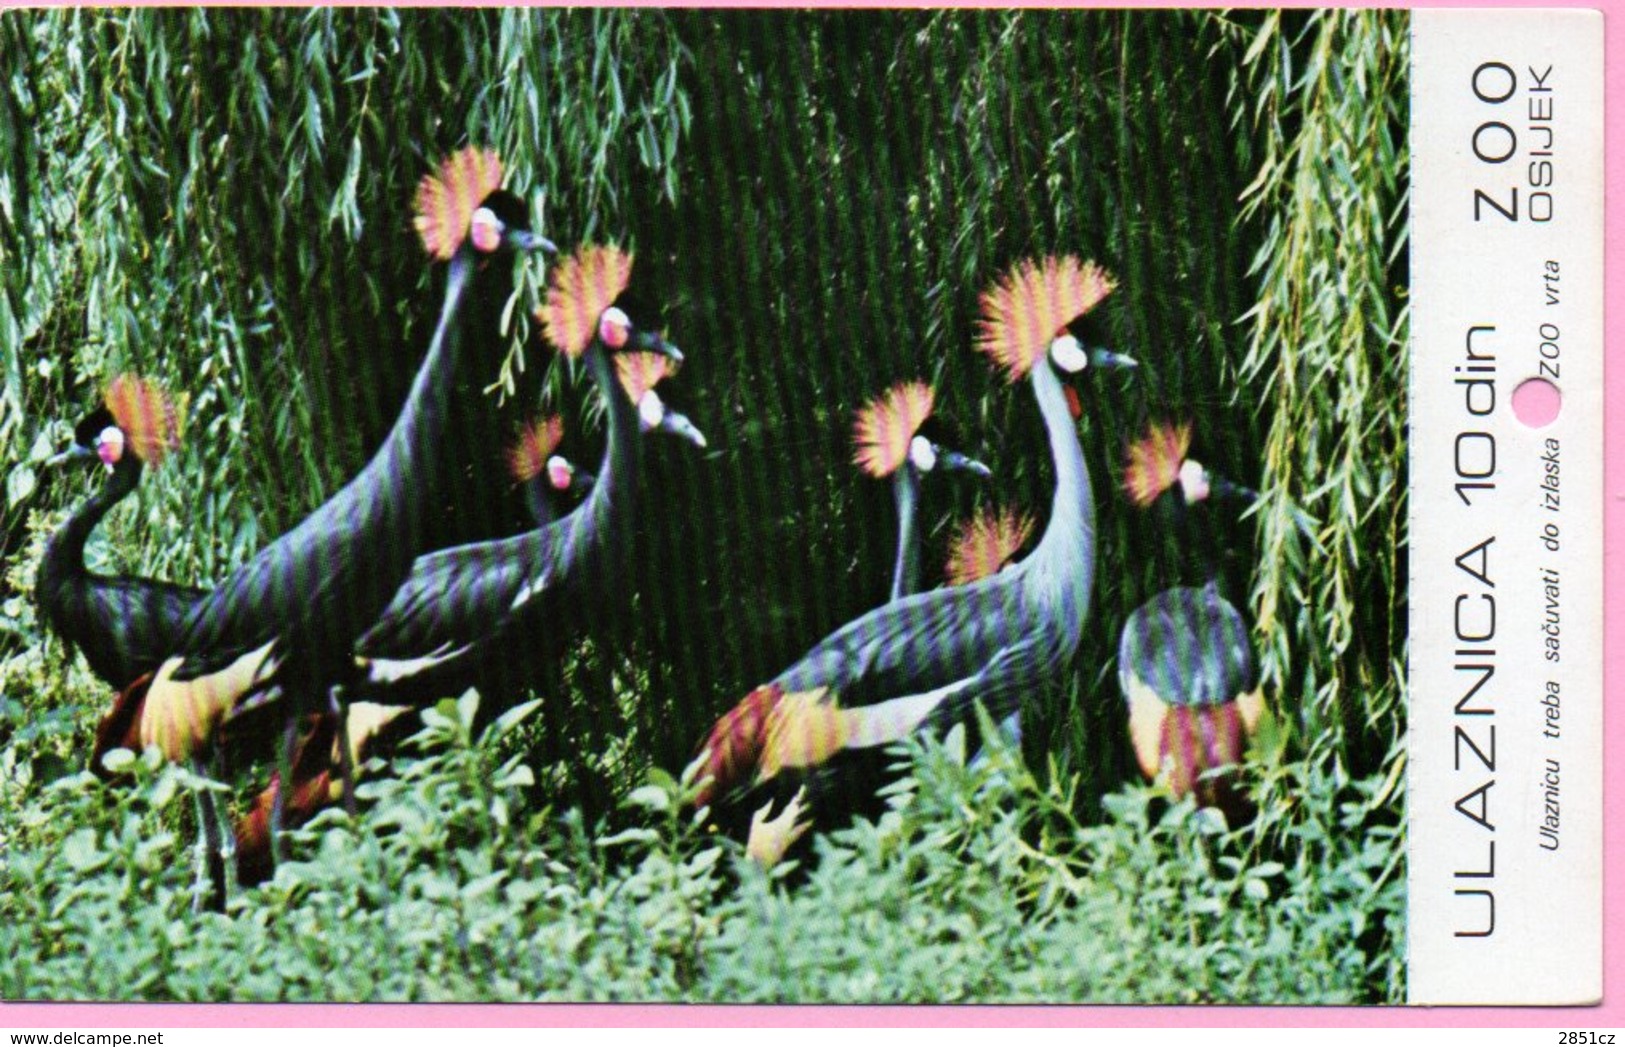 Ticket / Postcard - ZOO Garden - Crow Cranes, Osijek, Yugoslavia - Tickets - Vouchers